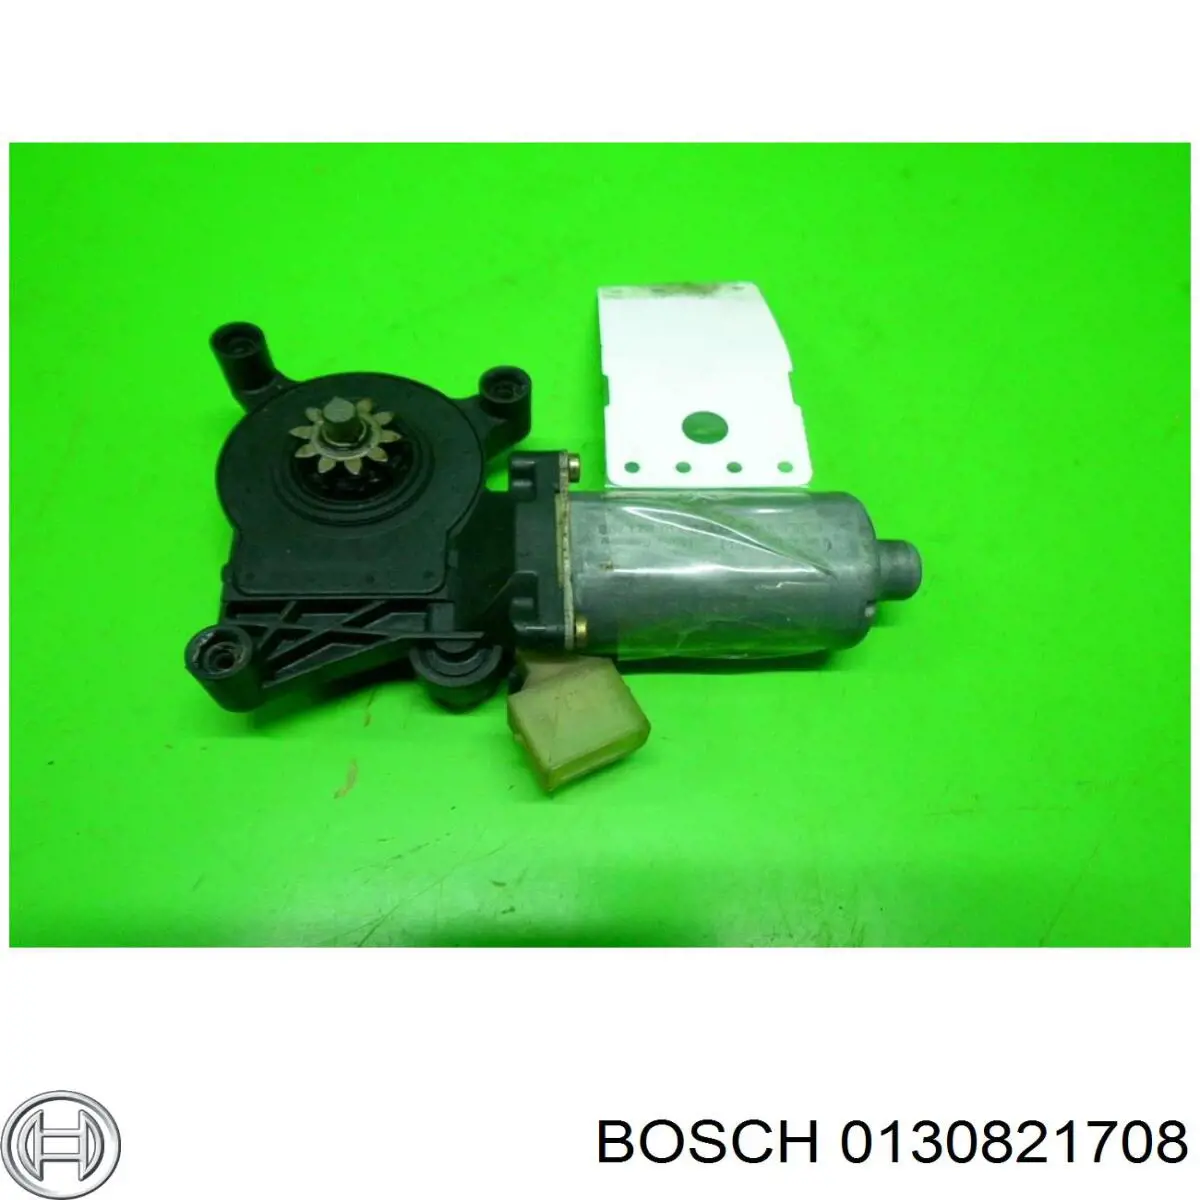 0130821708 Bosch motor de acionamento de vidro da porta dianteira esquerda